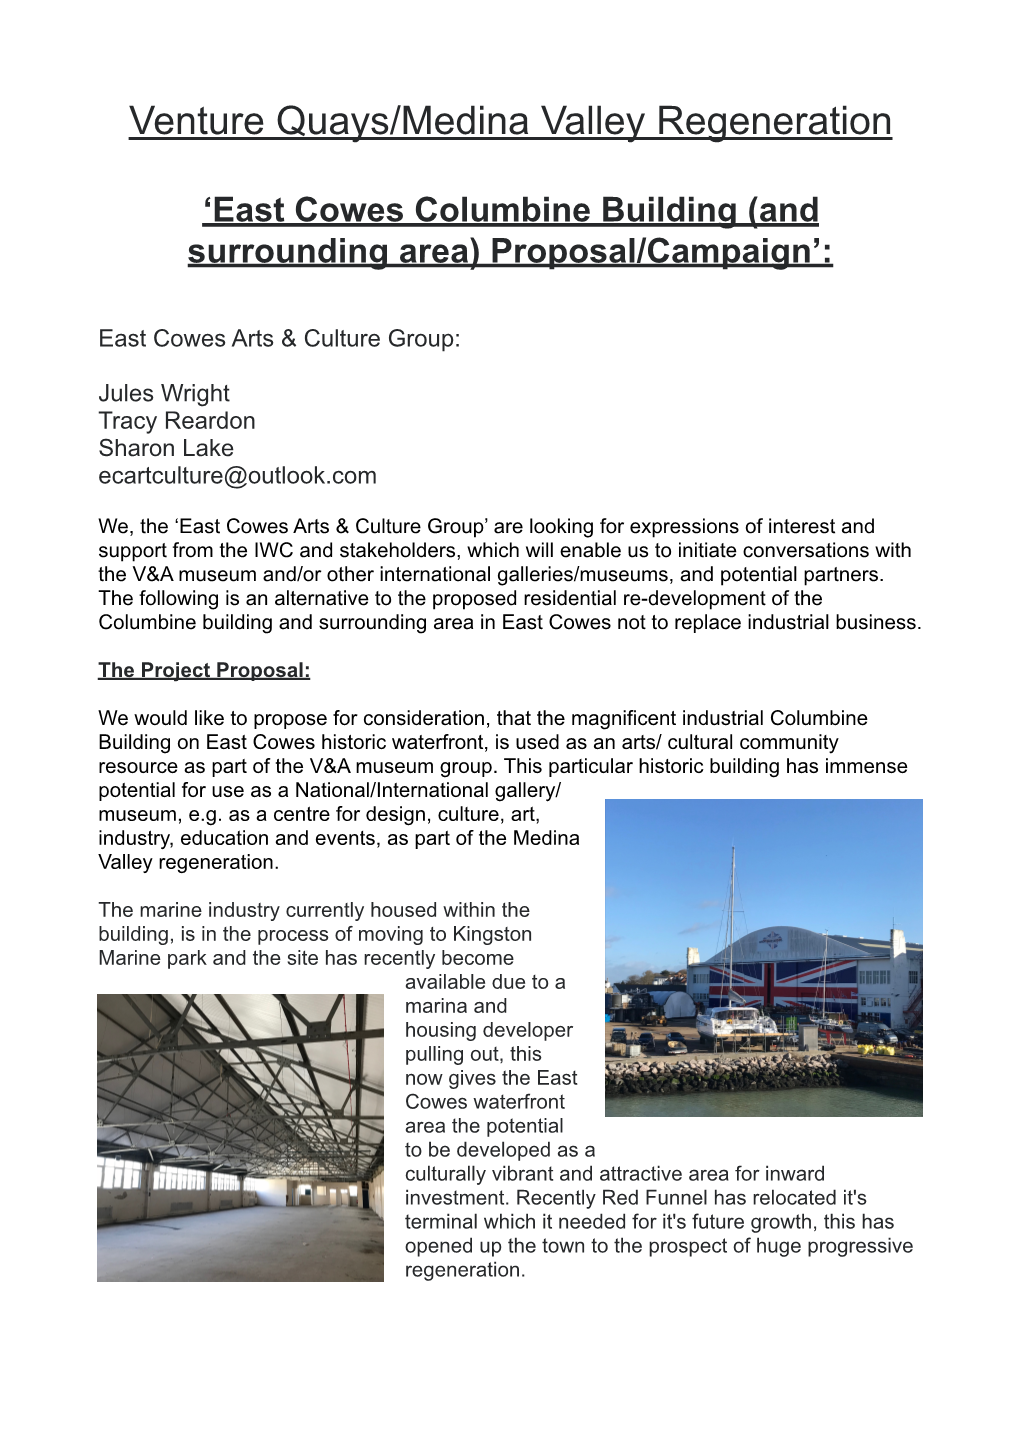 East Cowes Columbine Building/Venture Quays Proposal